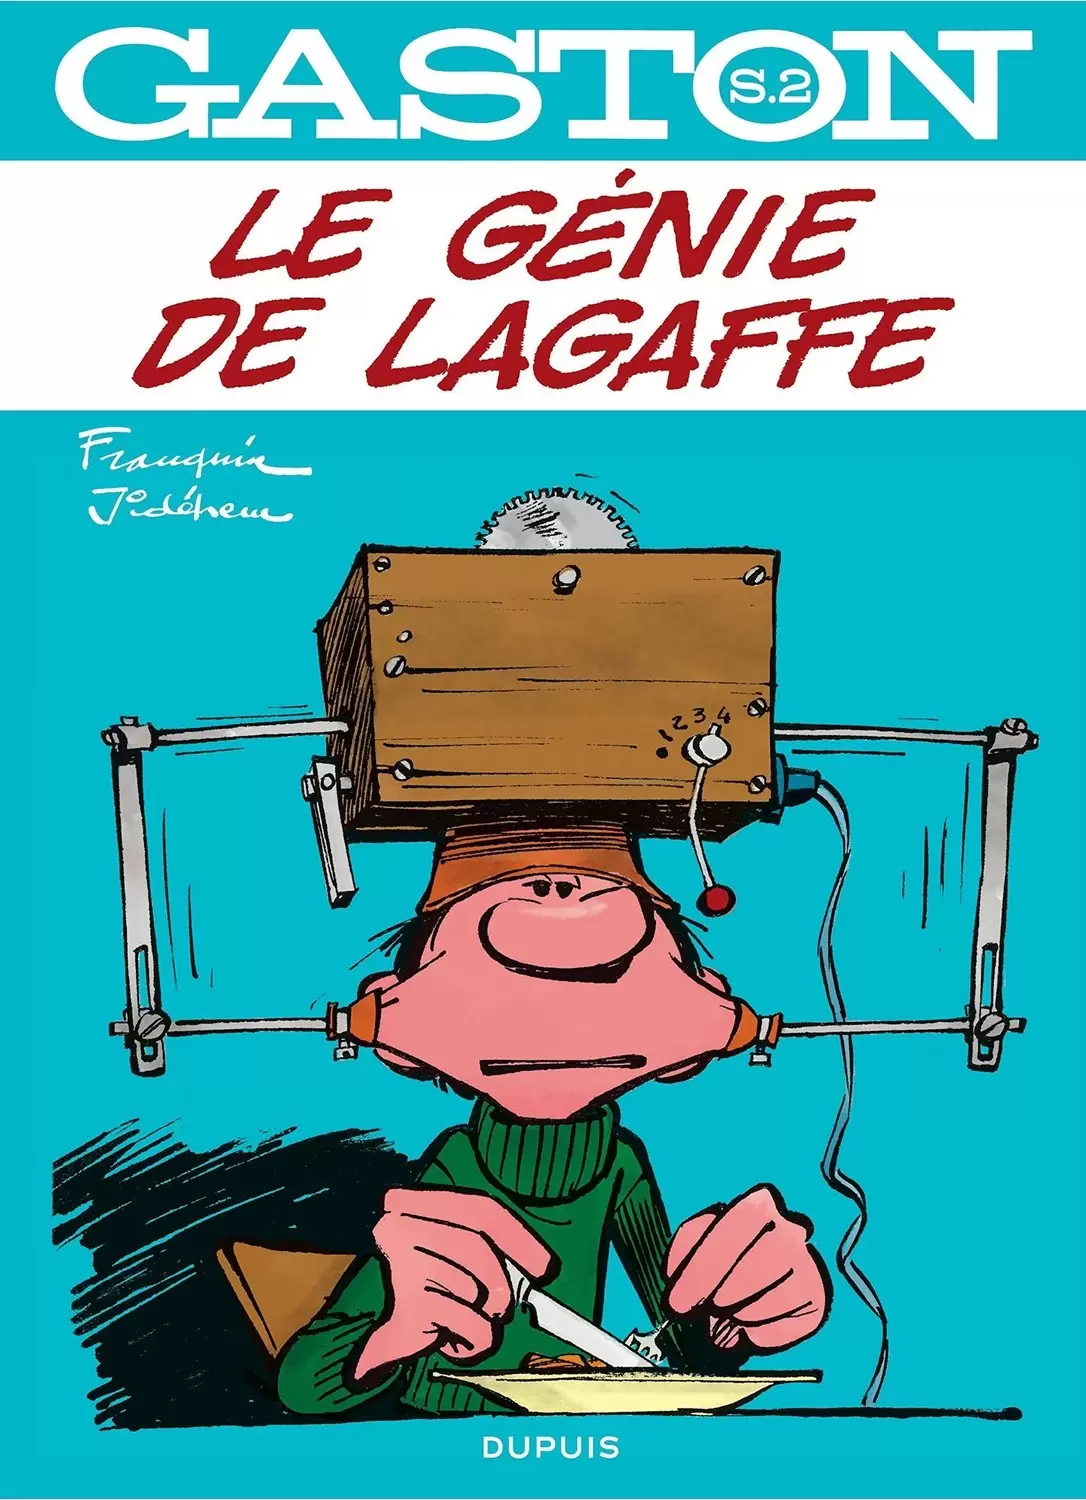 Gaston Lagaffe - Le Génie de Lagaffe